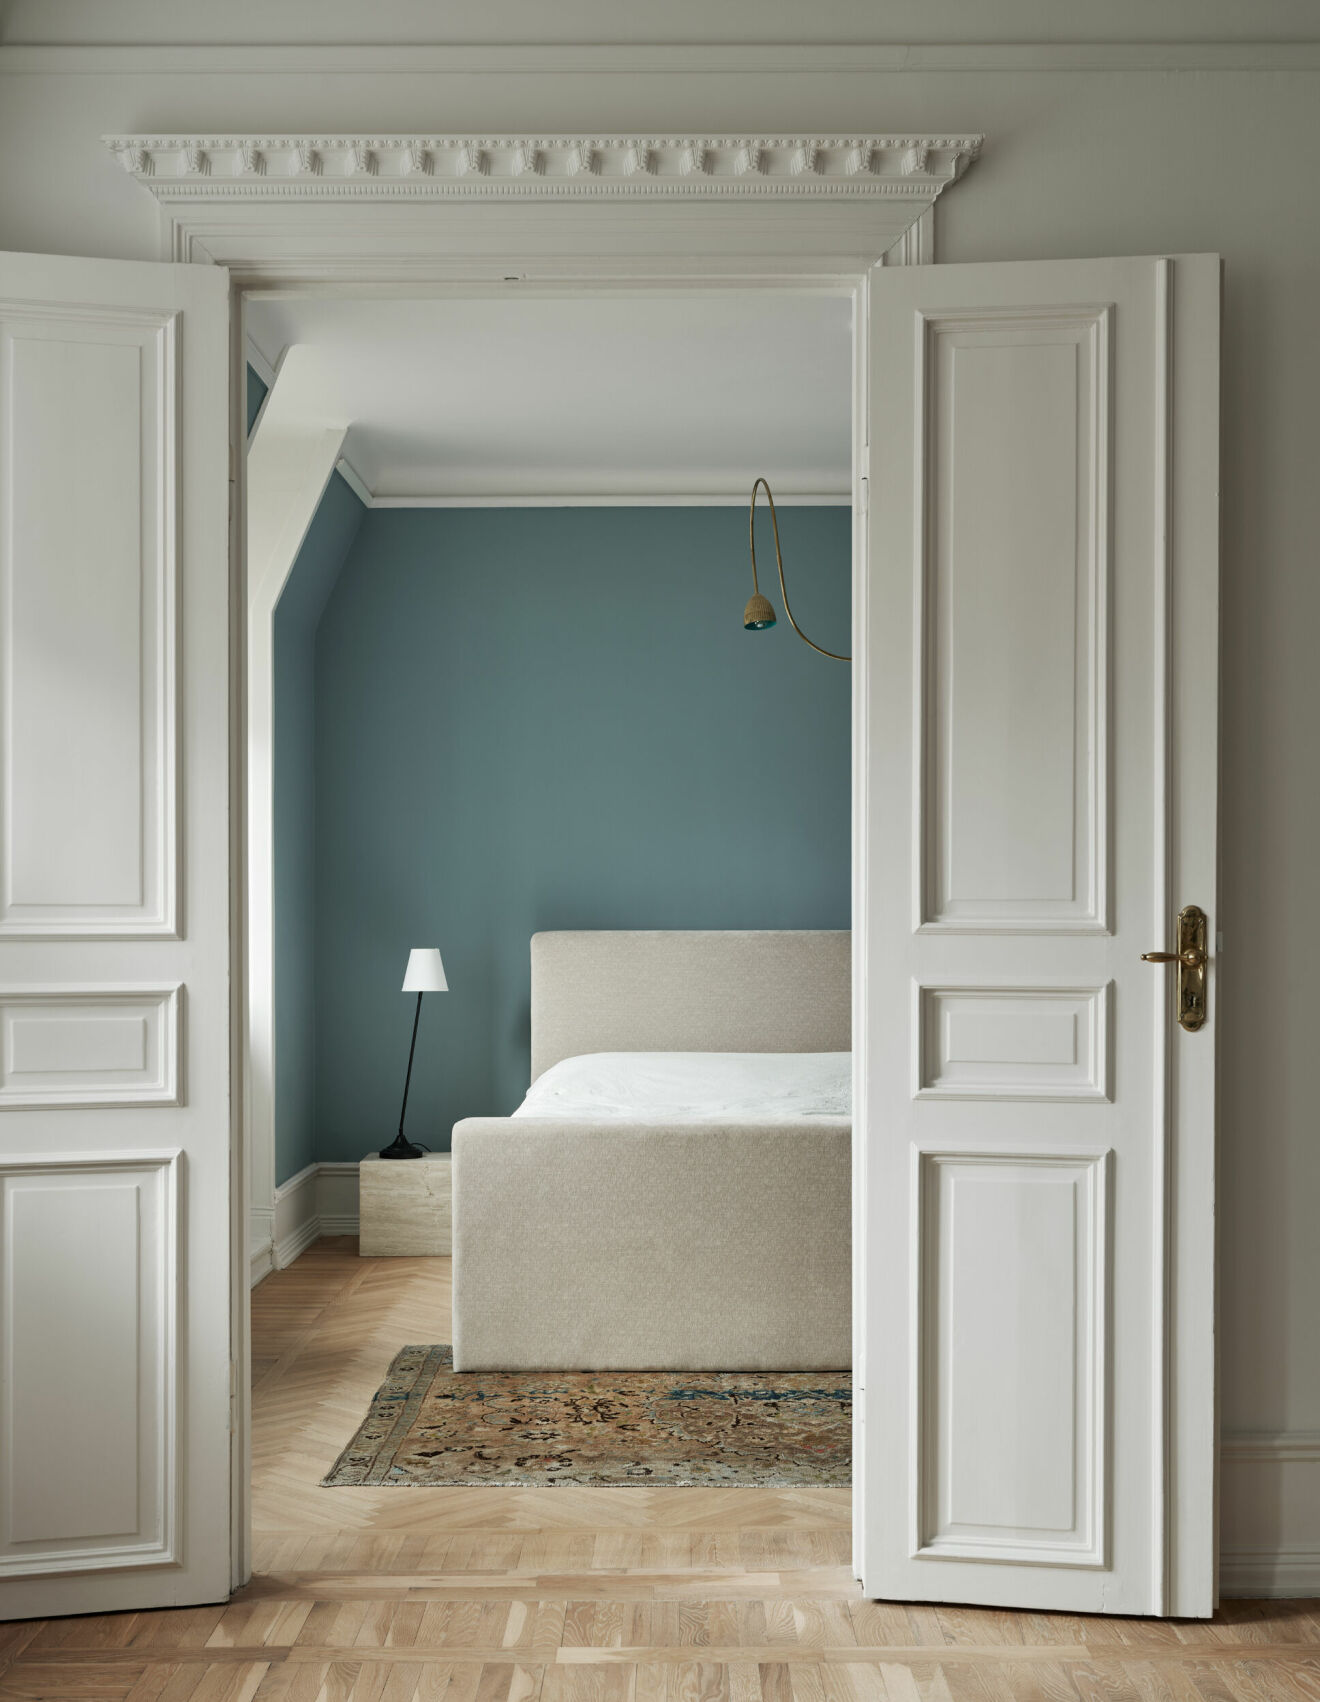 Sovrum i snarlik gustaviansk blå med en liten twist. Sängbordet av Sofia Ristic design för Studio Vraco. Säng, Jotex. Matta, vintage. Taklampa, Svenska armaturer.